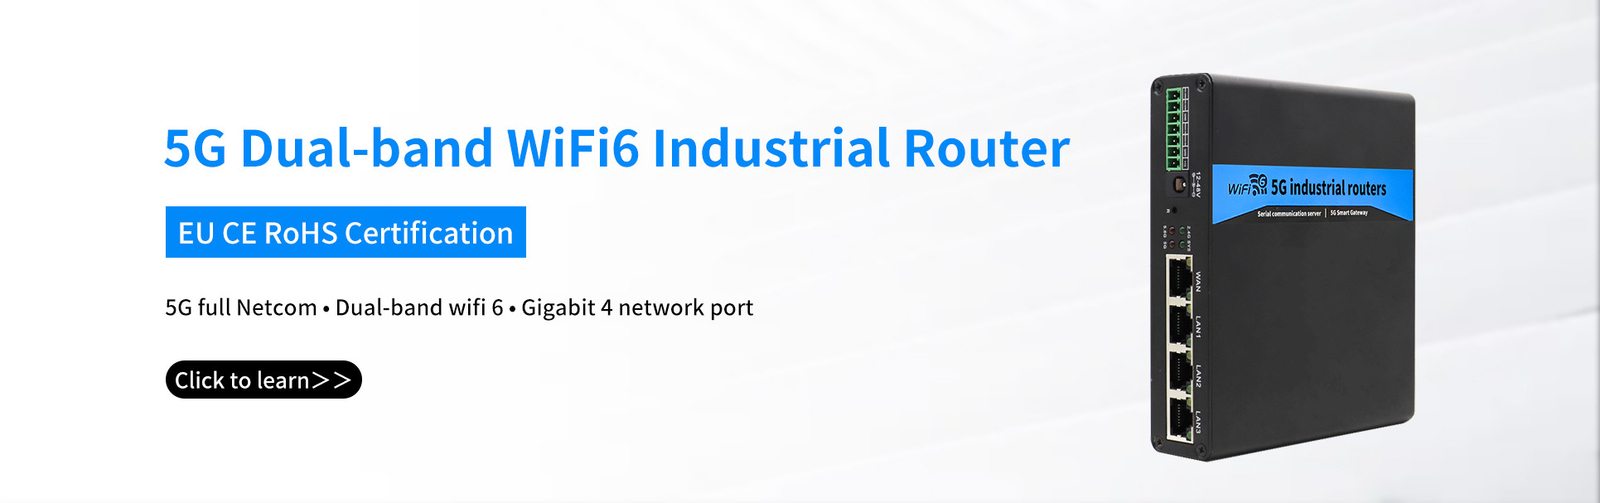 routeur 5G industriel